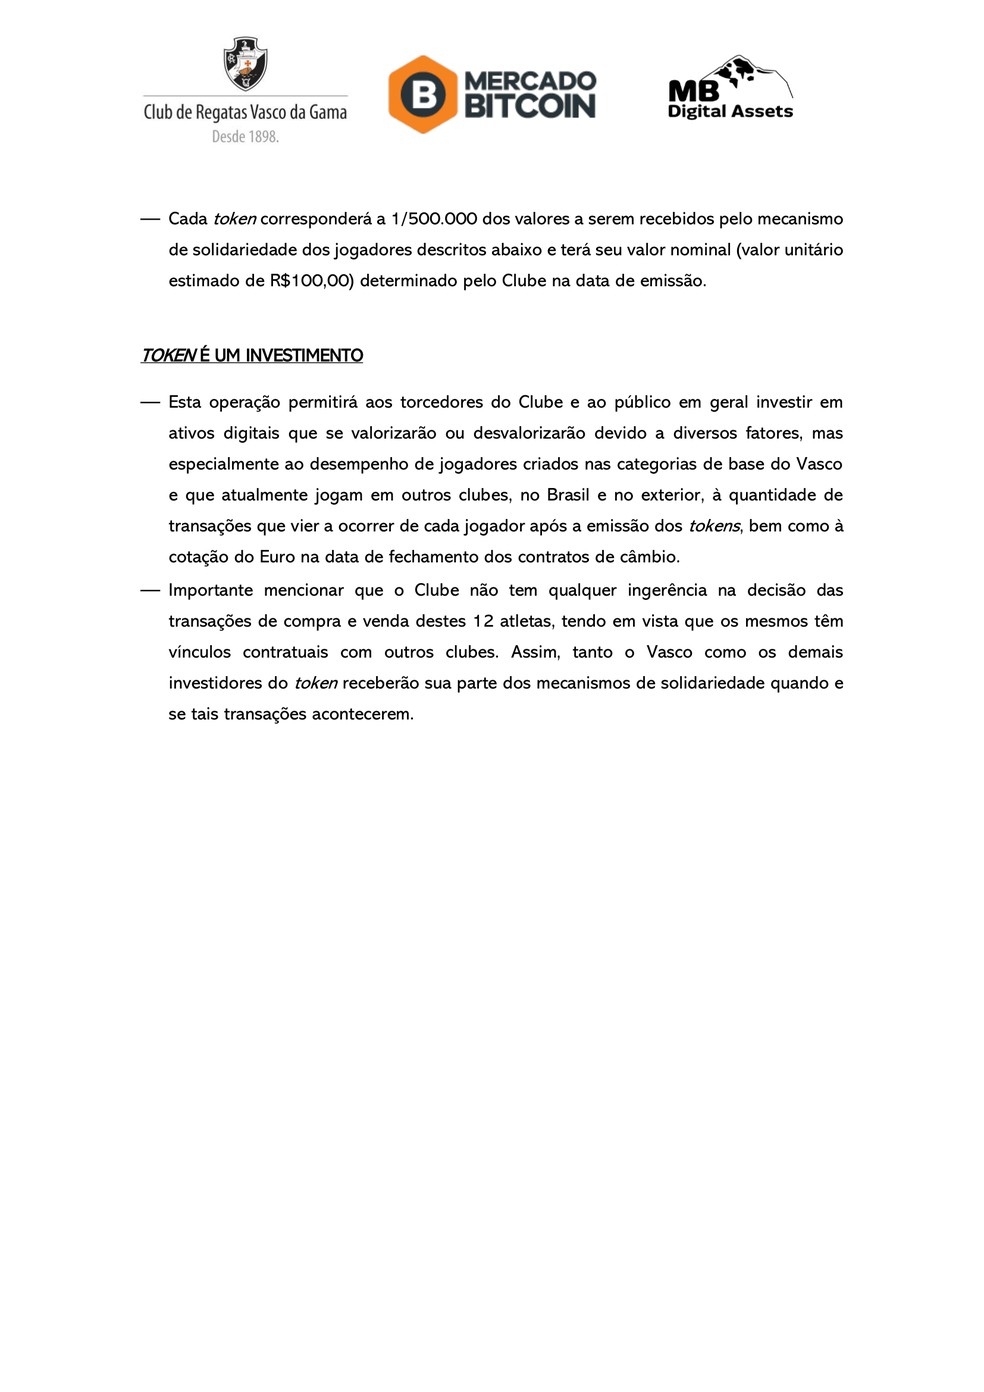 Confira detalhes do acordo entre Vasco e Mercado Bitcoin — Foto: Divulgação